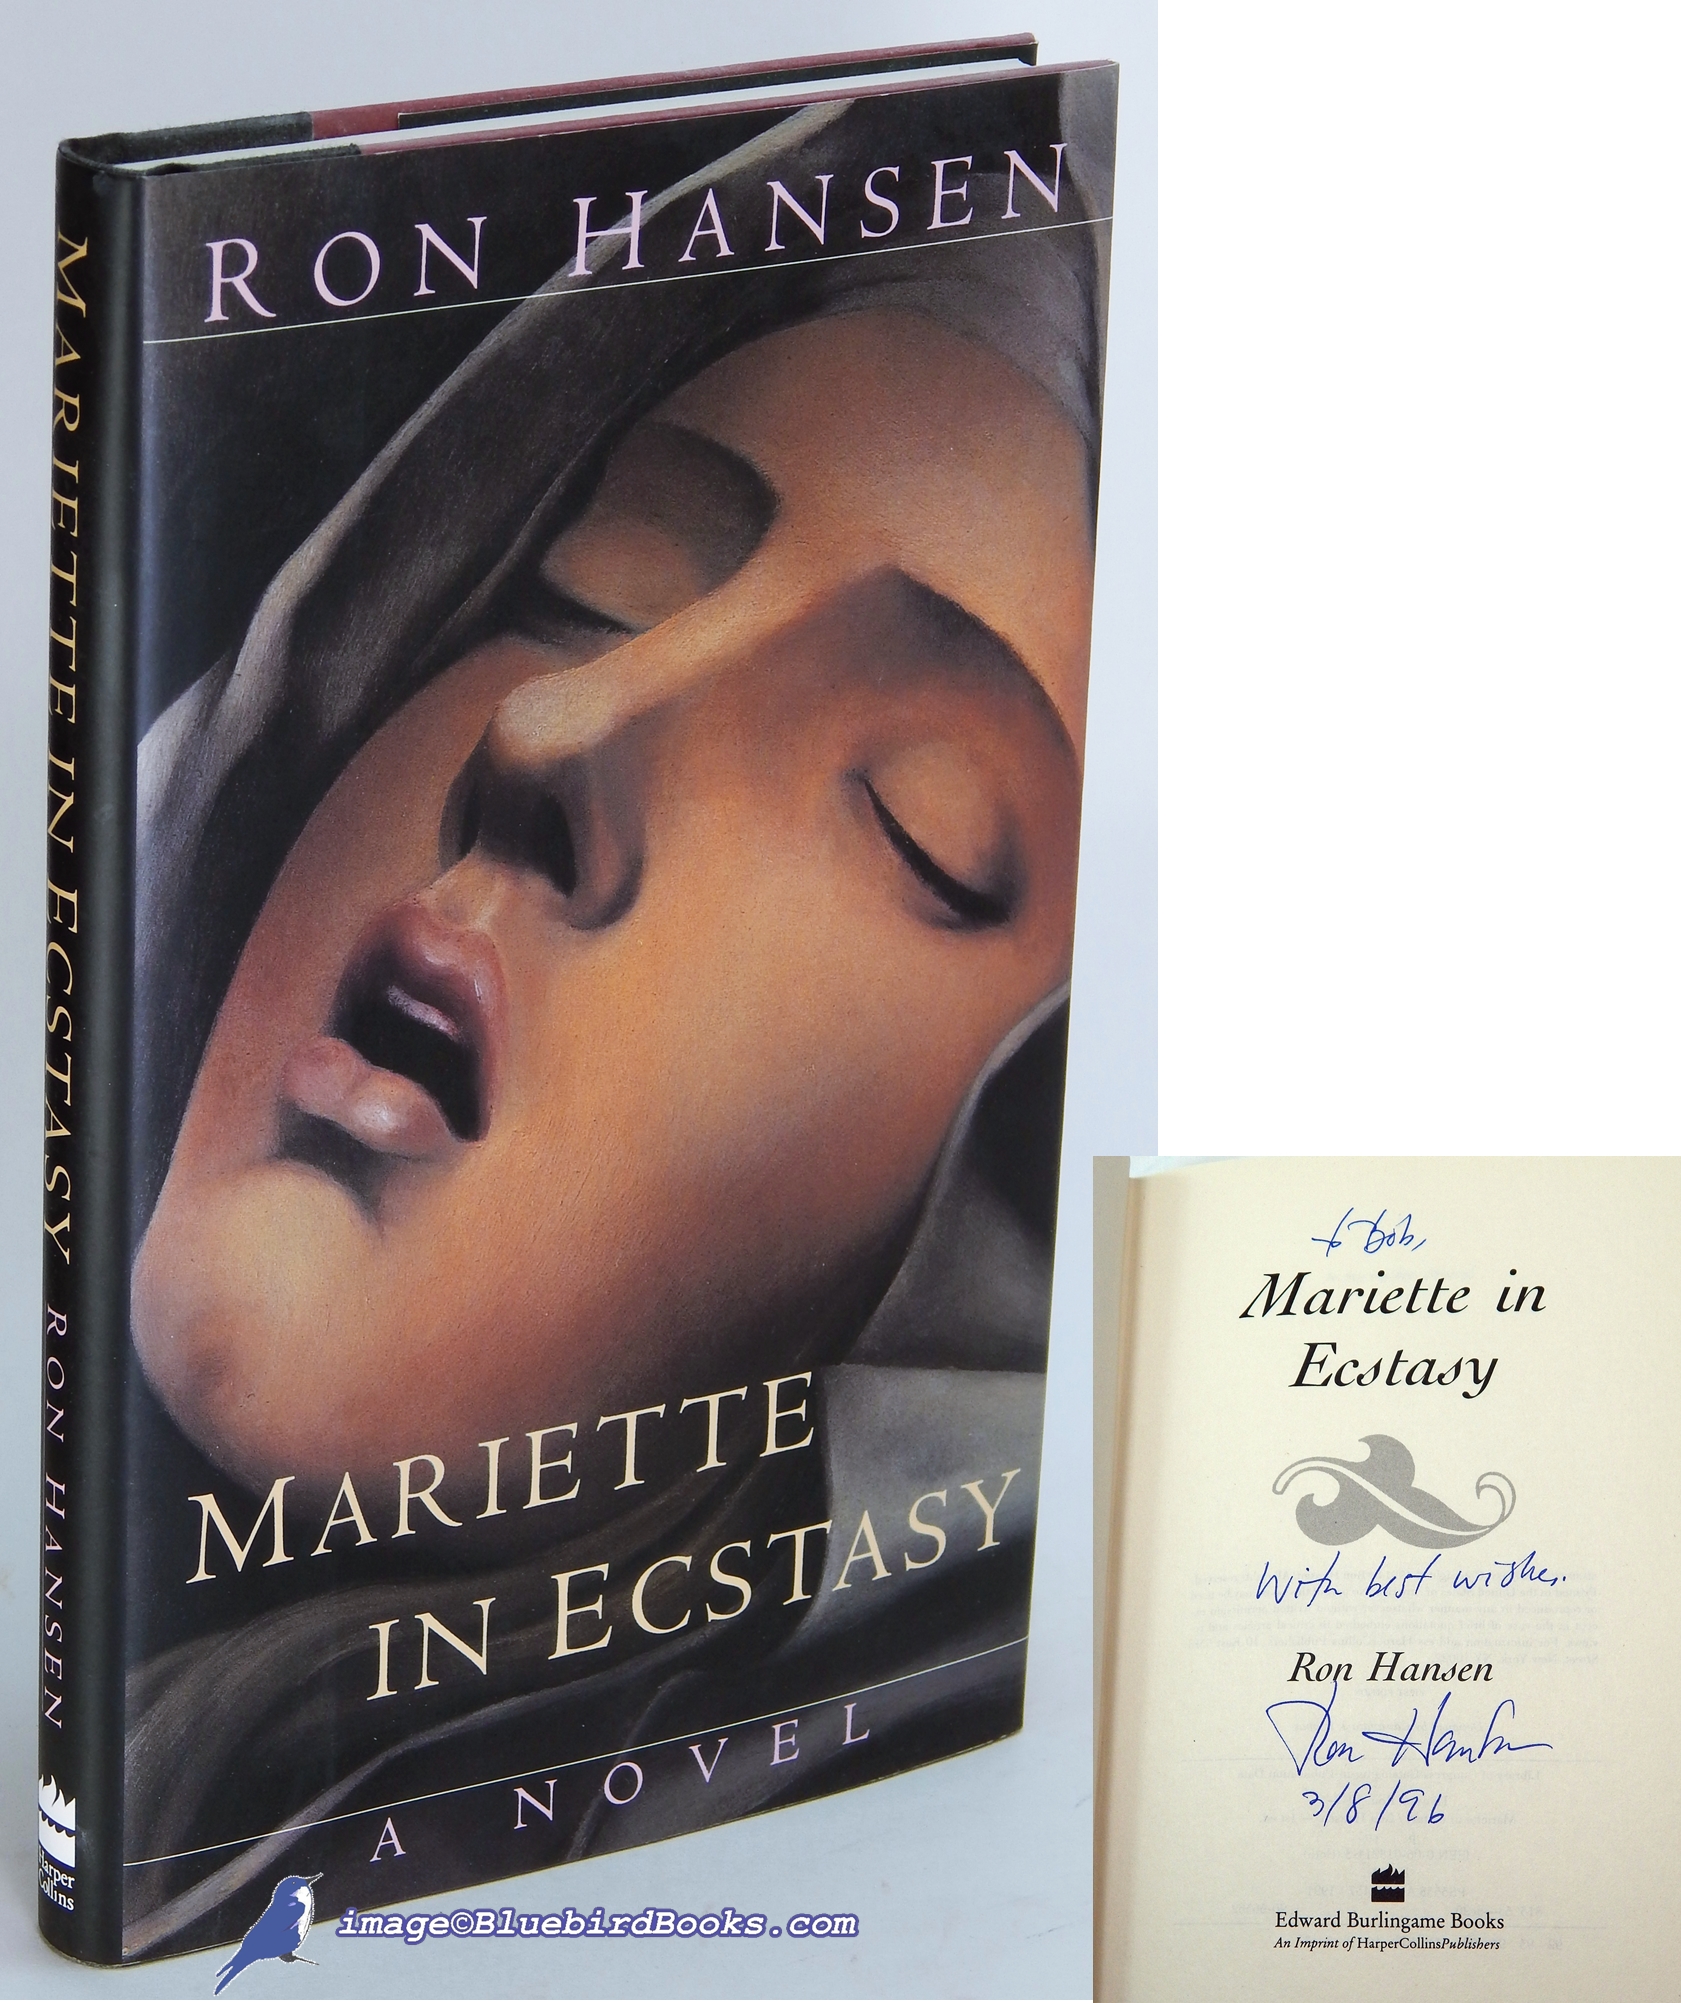 HANSEN, RON - Mariette in Ecstasy: A Novel